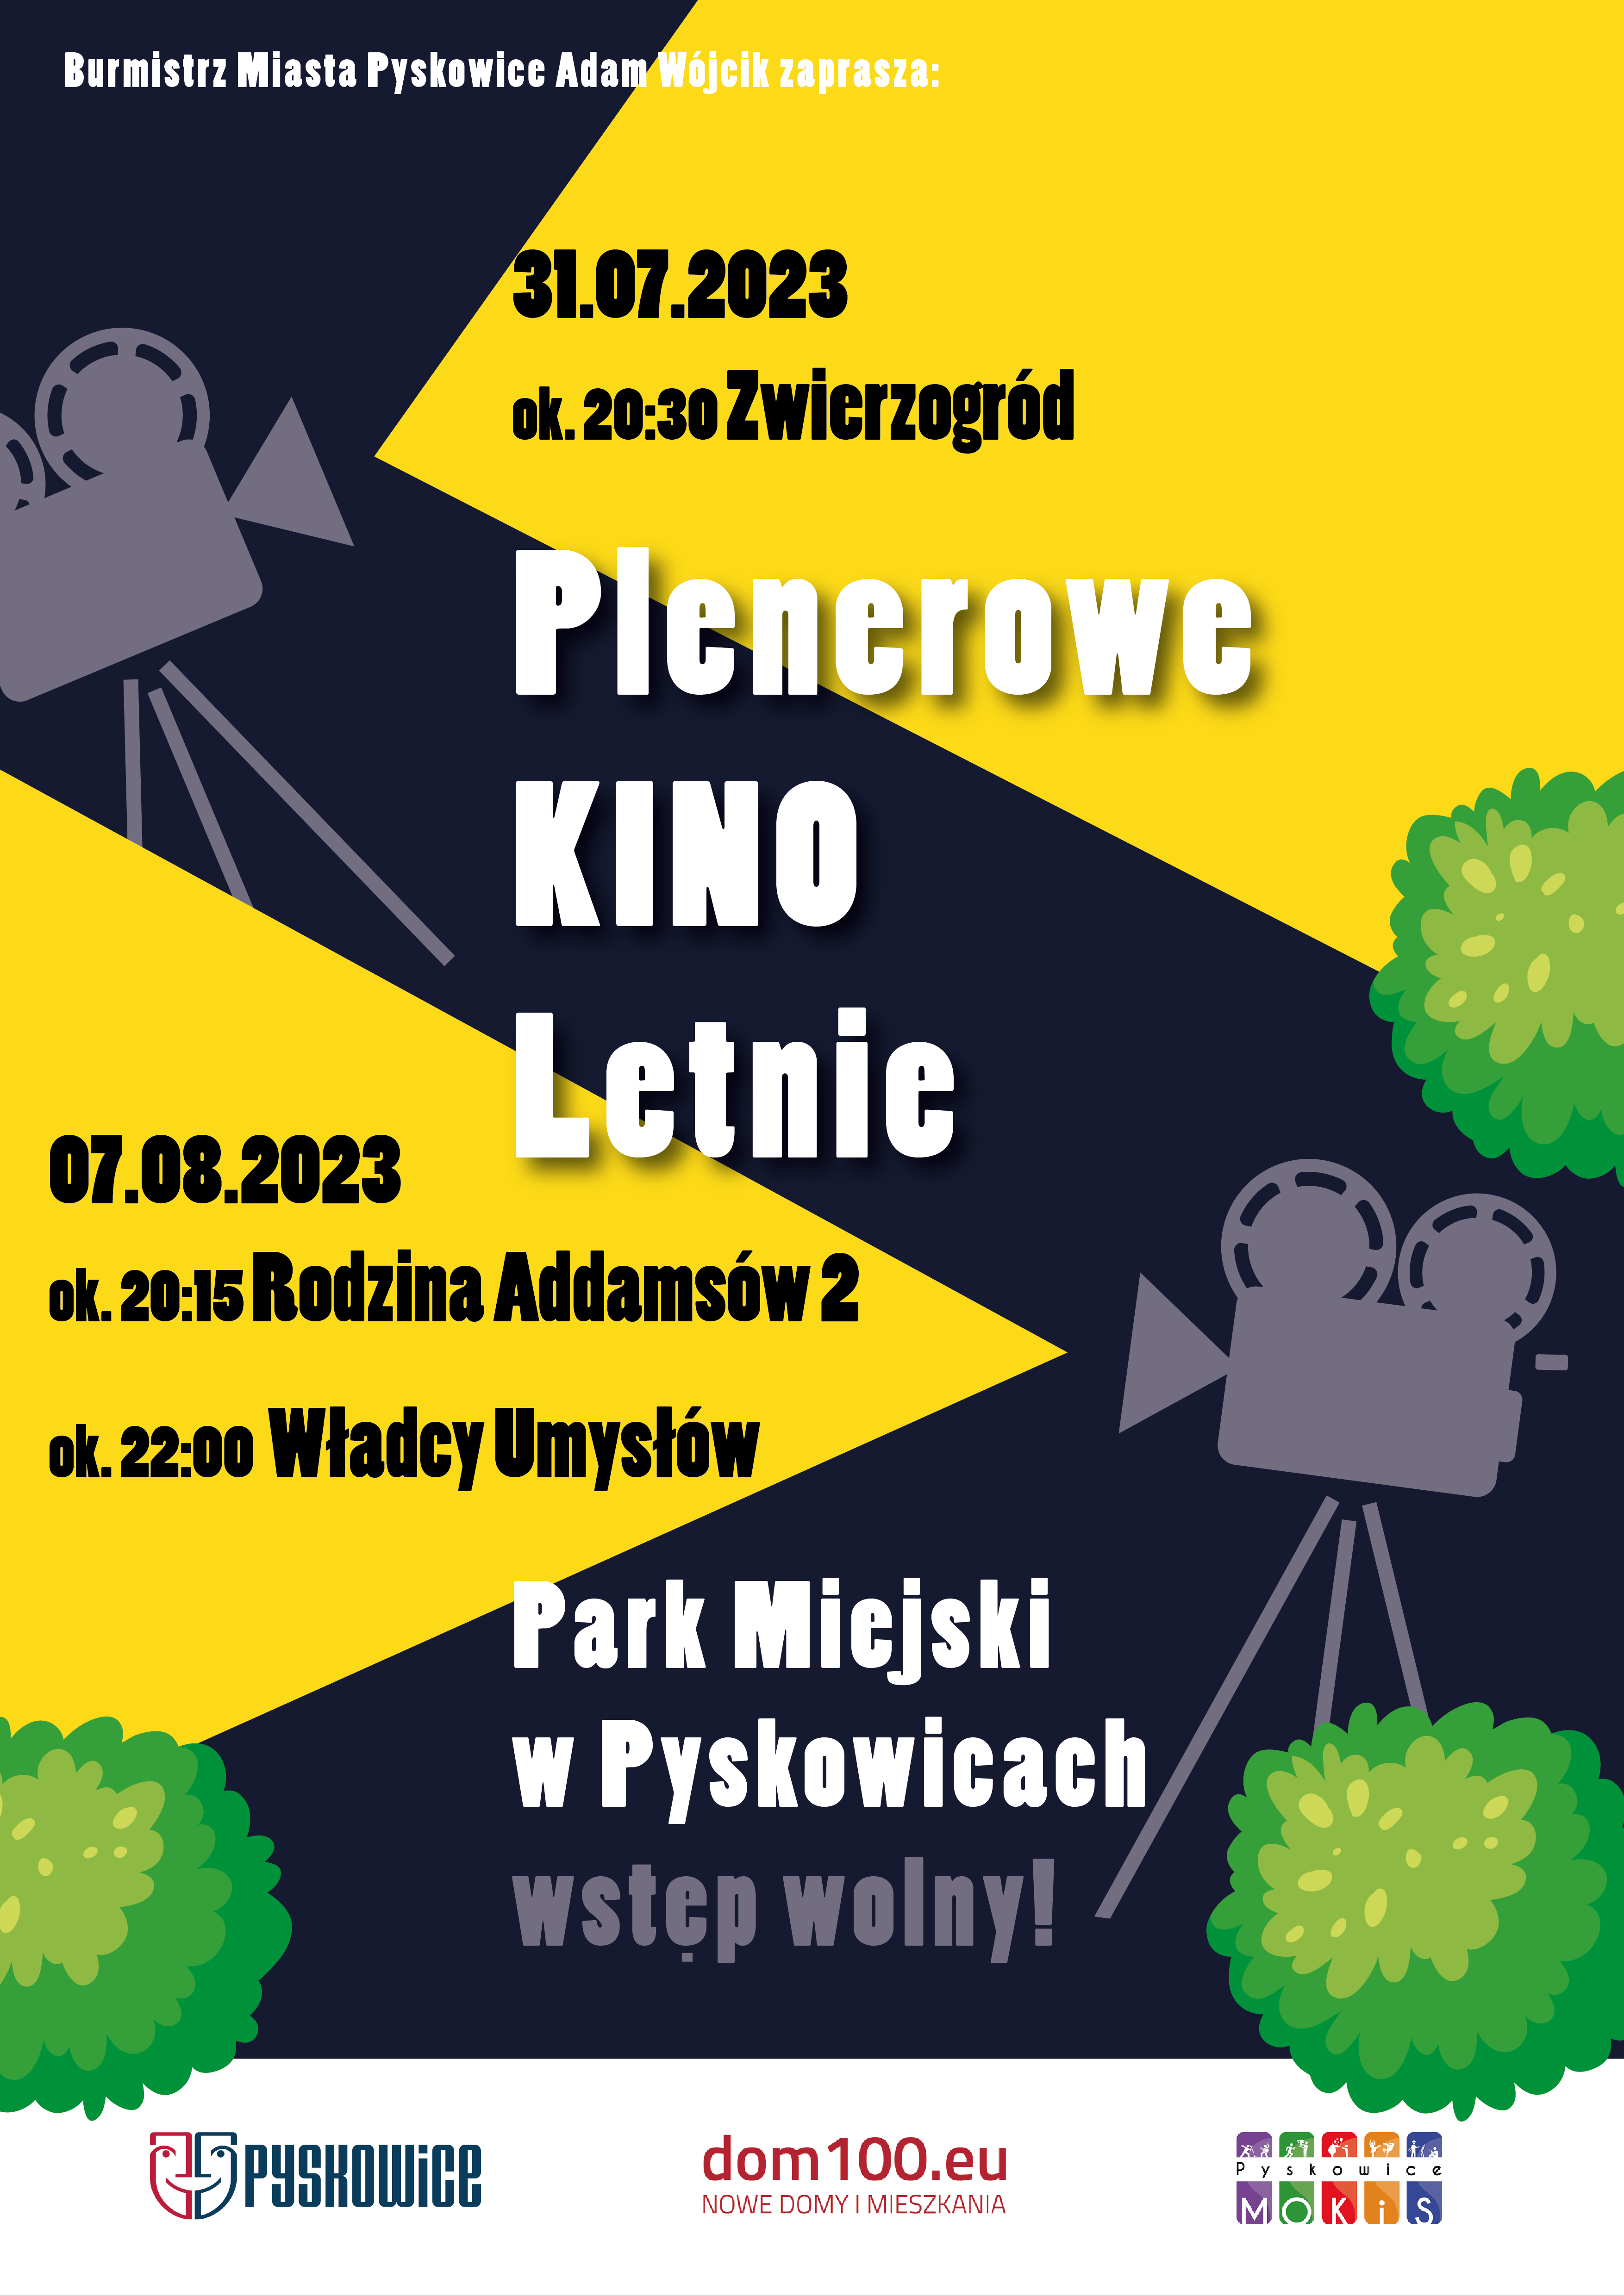 Plakat promujący Plenerowe Kino Letnie w Parku Miejskim w Pyskowicach